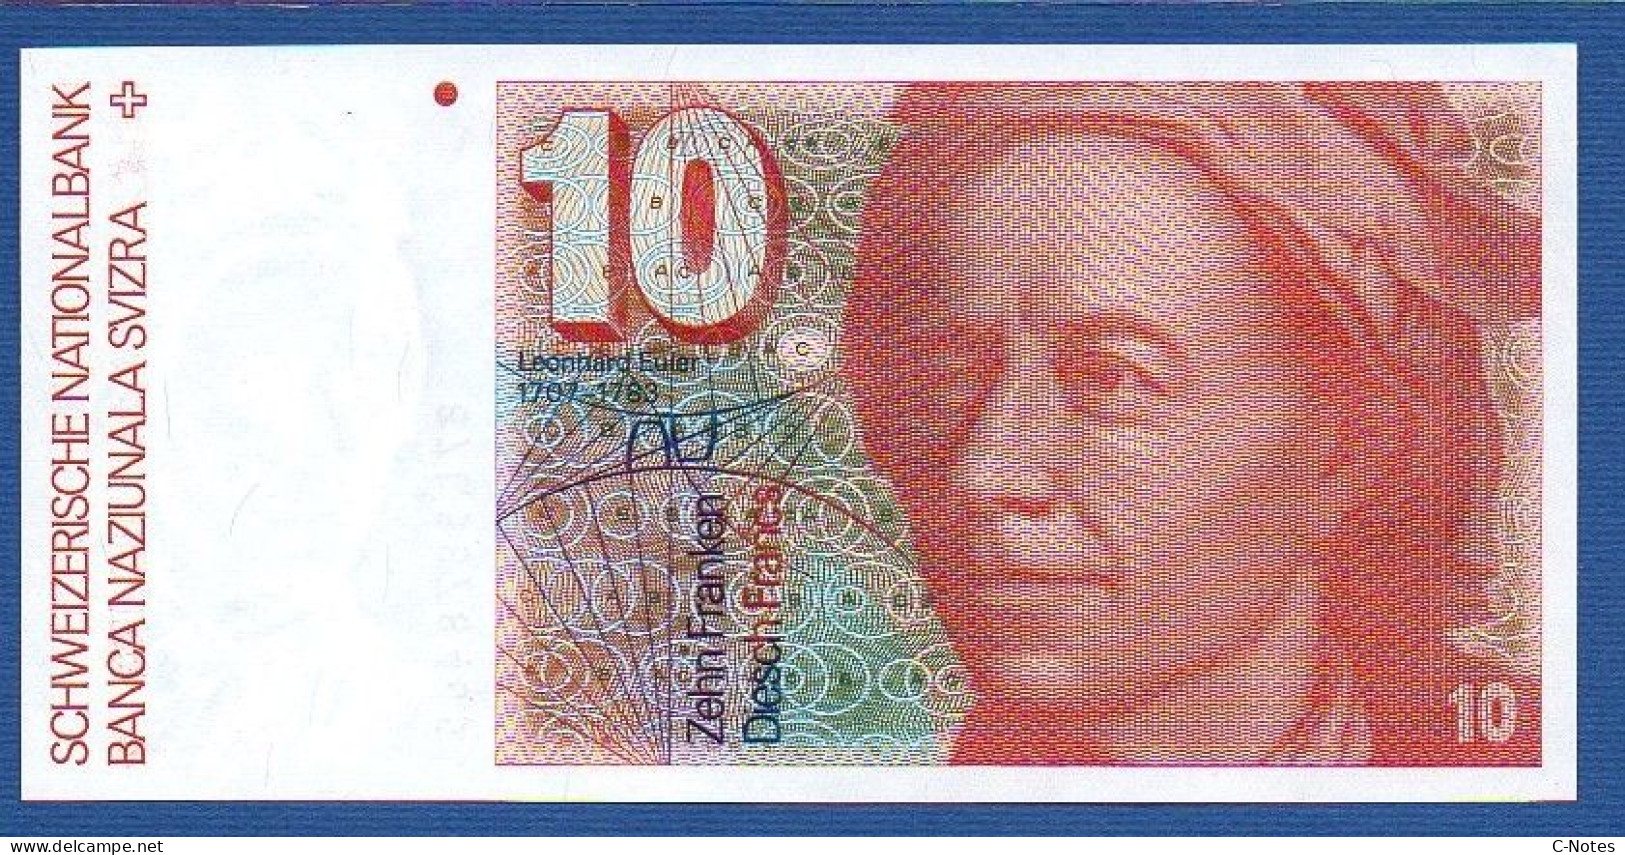 SWITZERLAND - P.53g(3) - 10 Francs 1987 UNC, Serie 87L5878465   -signatures: F. Schaller & Meyer - Switzerland